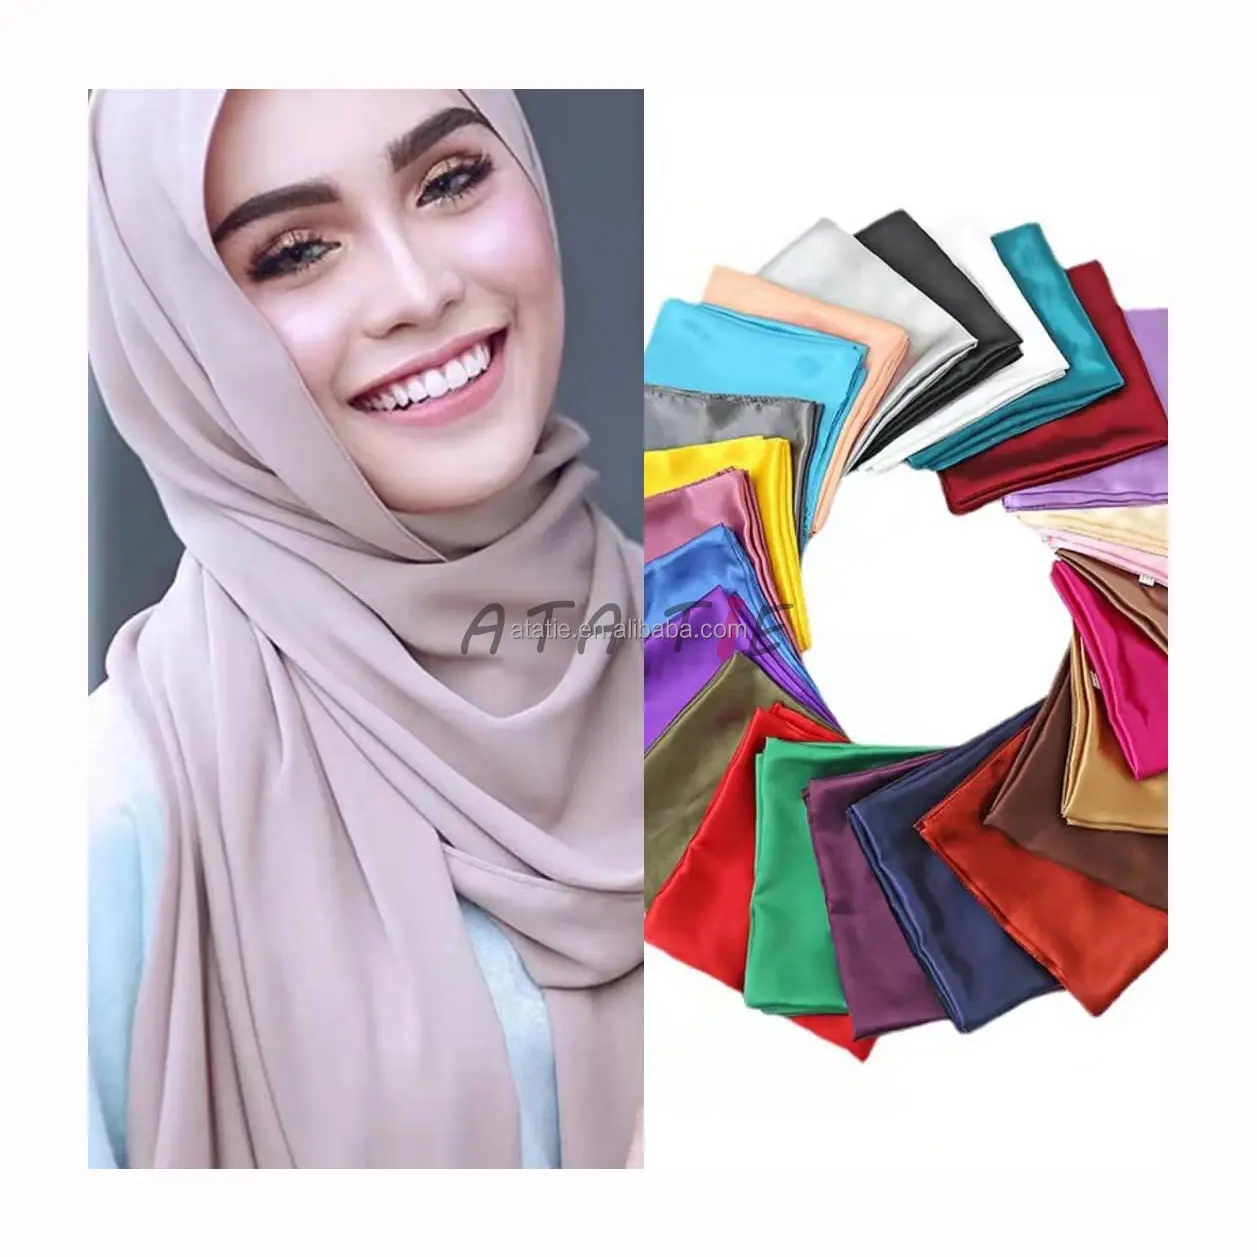 Branco quadrado borda de seda cetim 90x90 roxo cabeça lisa hijab rosa cor sólida lenço